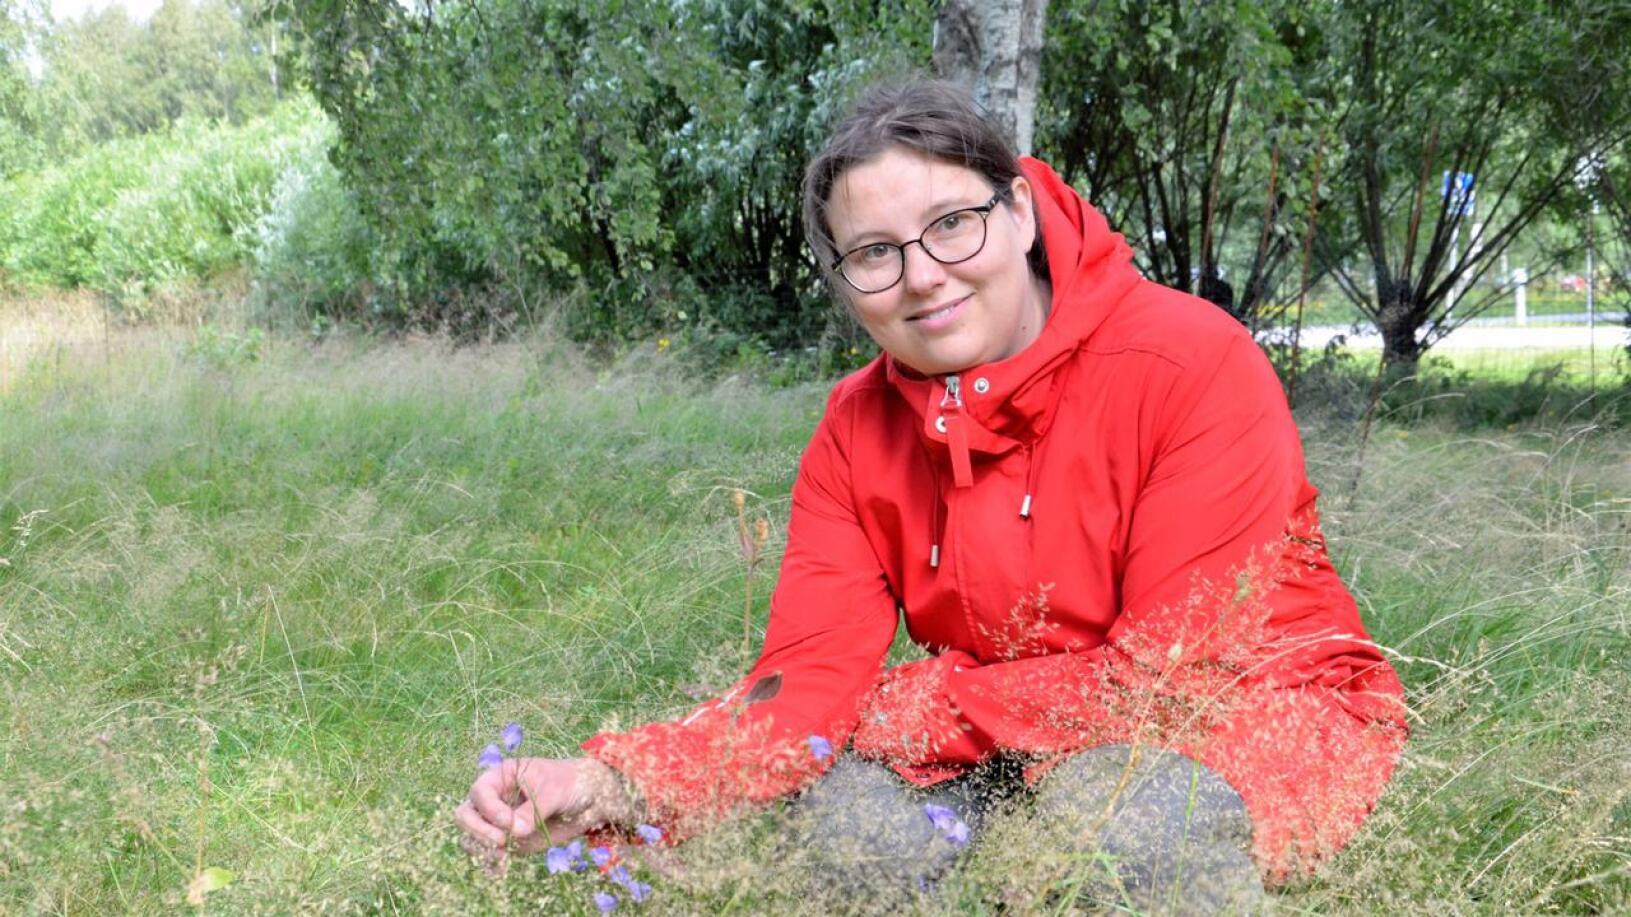 Ylivieskalainen Aila Mustamo on ensimmäinen tiedossa oleva vihreä ehdokas Keskipohjanmaan levikkialueelta. Hän on toiminut pitkään ympäristöliikkeessä, viime vuosina erityisesti Suomen Ekomodernisteissa.